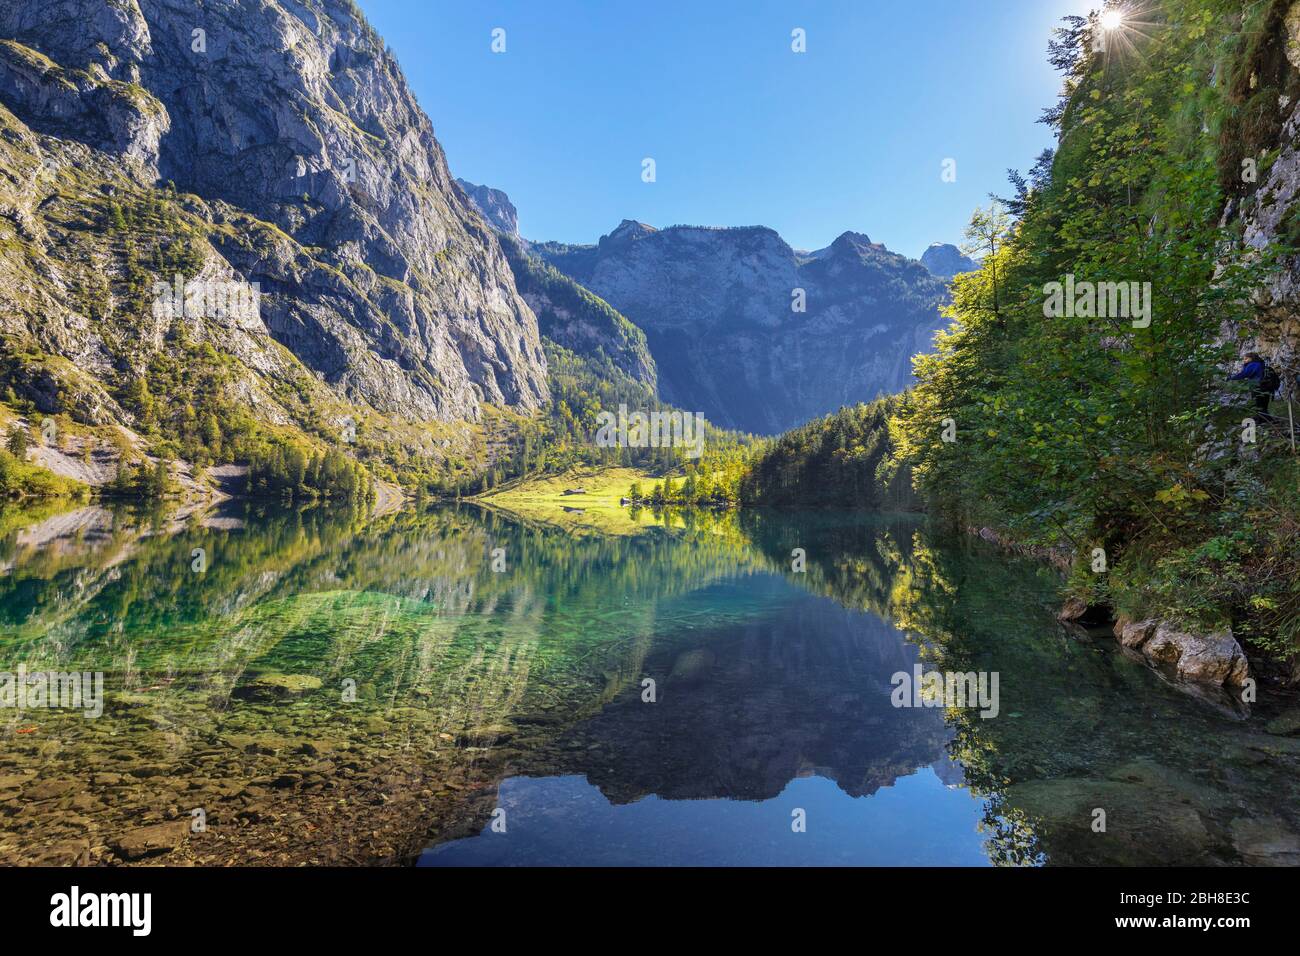 Obersee mit Blick zur Fischunkelalm, Salet am Königssee, Berchtesgadener Land, Nationalpark Berchtesgaden, Oberbayern, Bayern, Deutschland Foto Stock